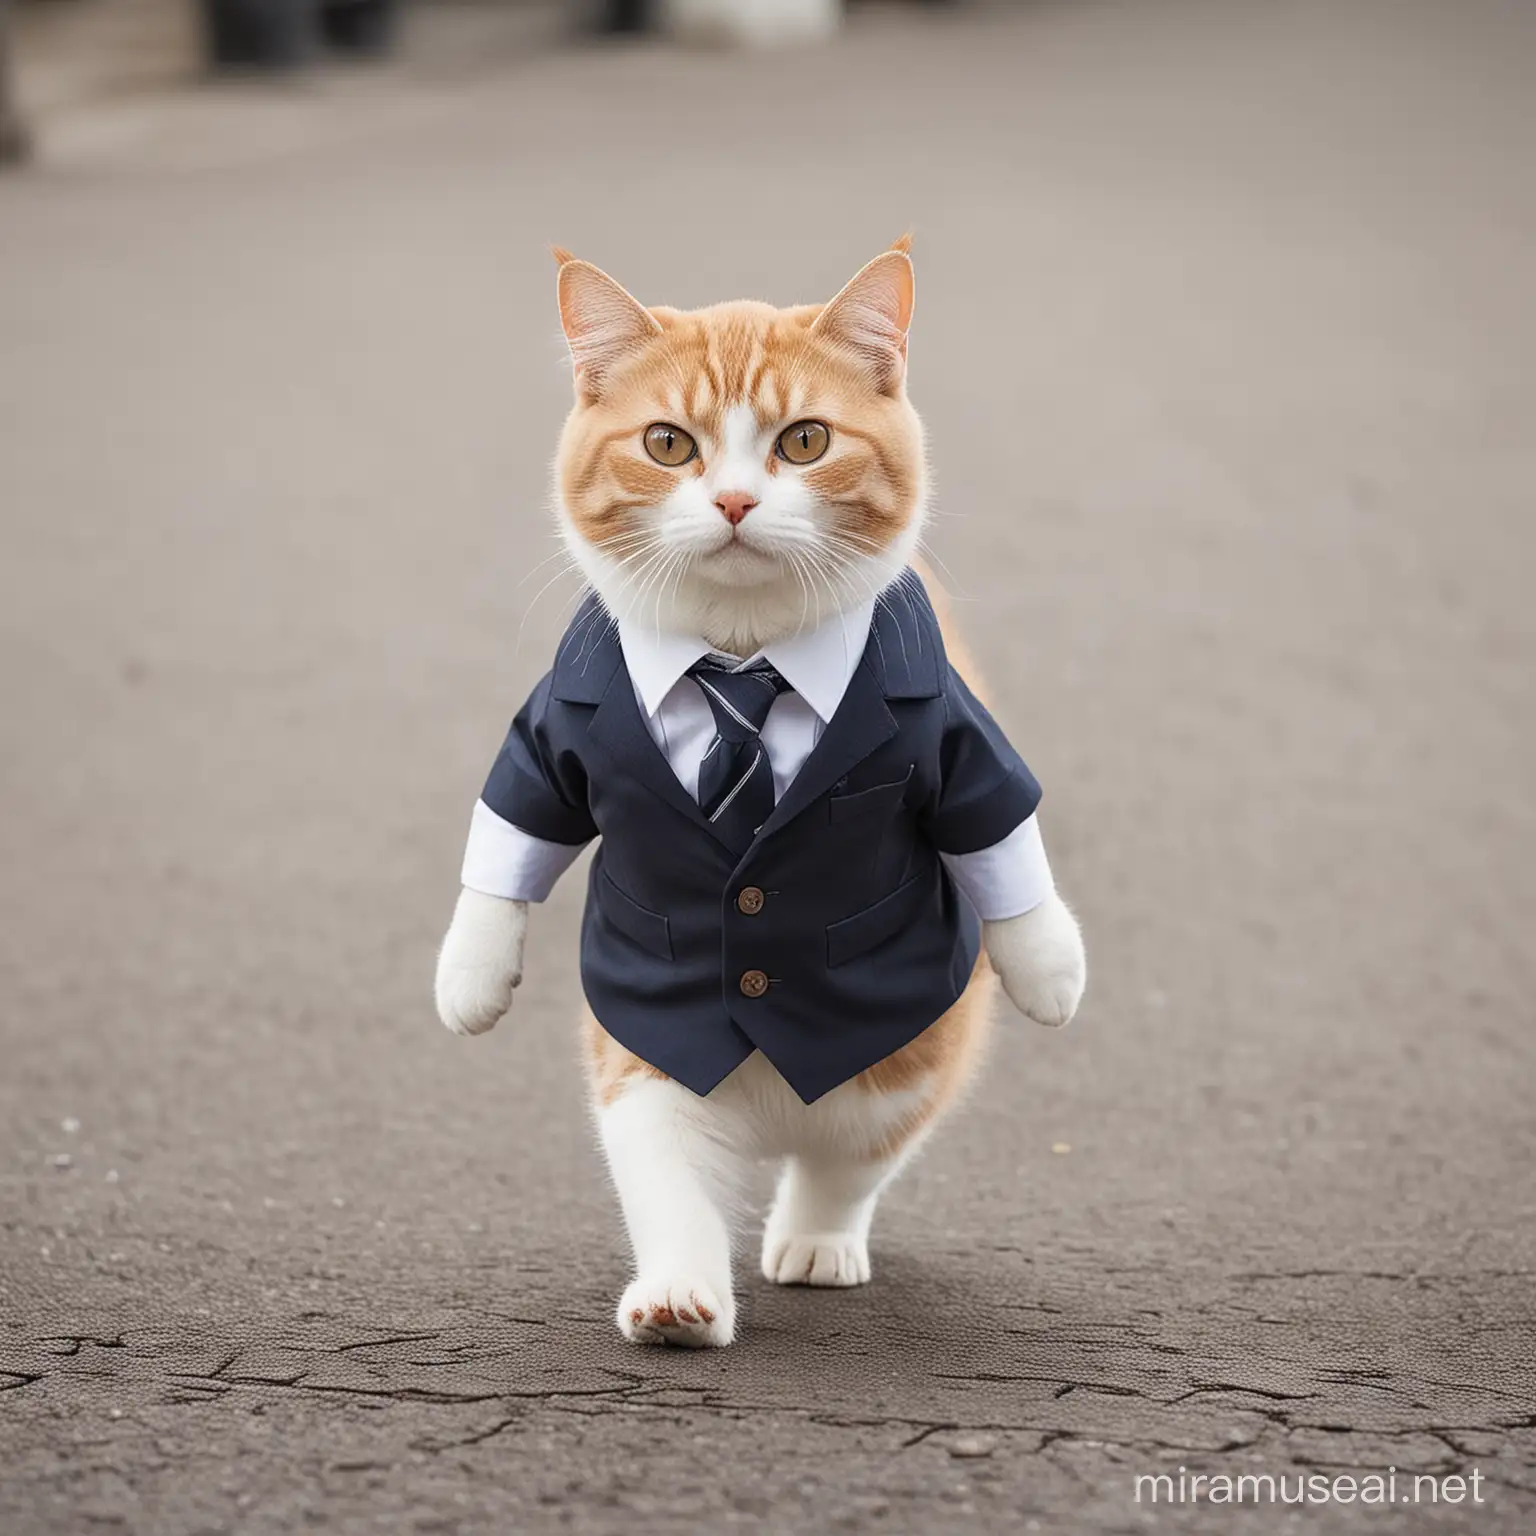 cute cat wearing business dress walking